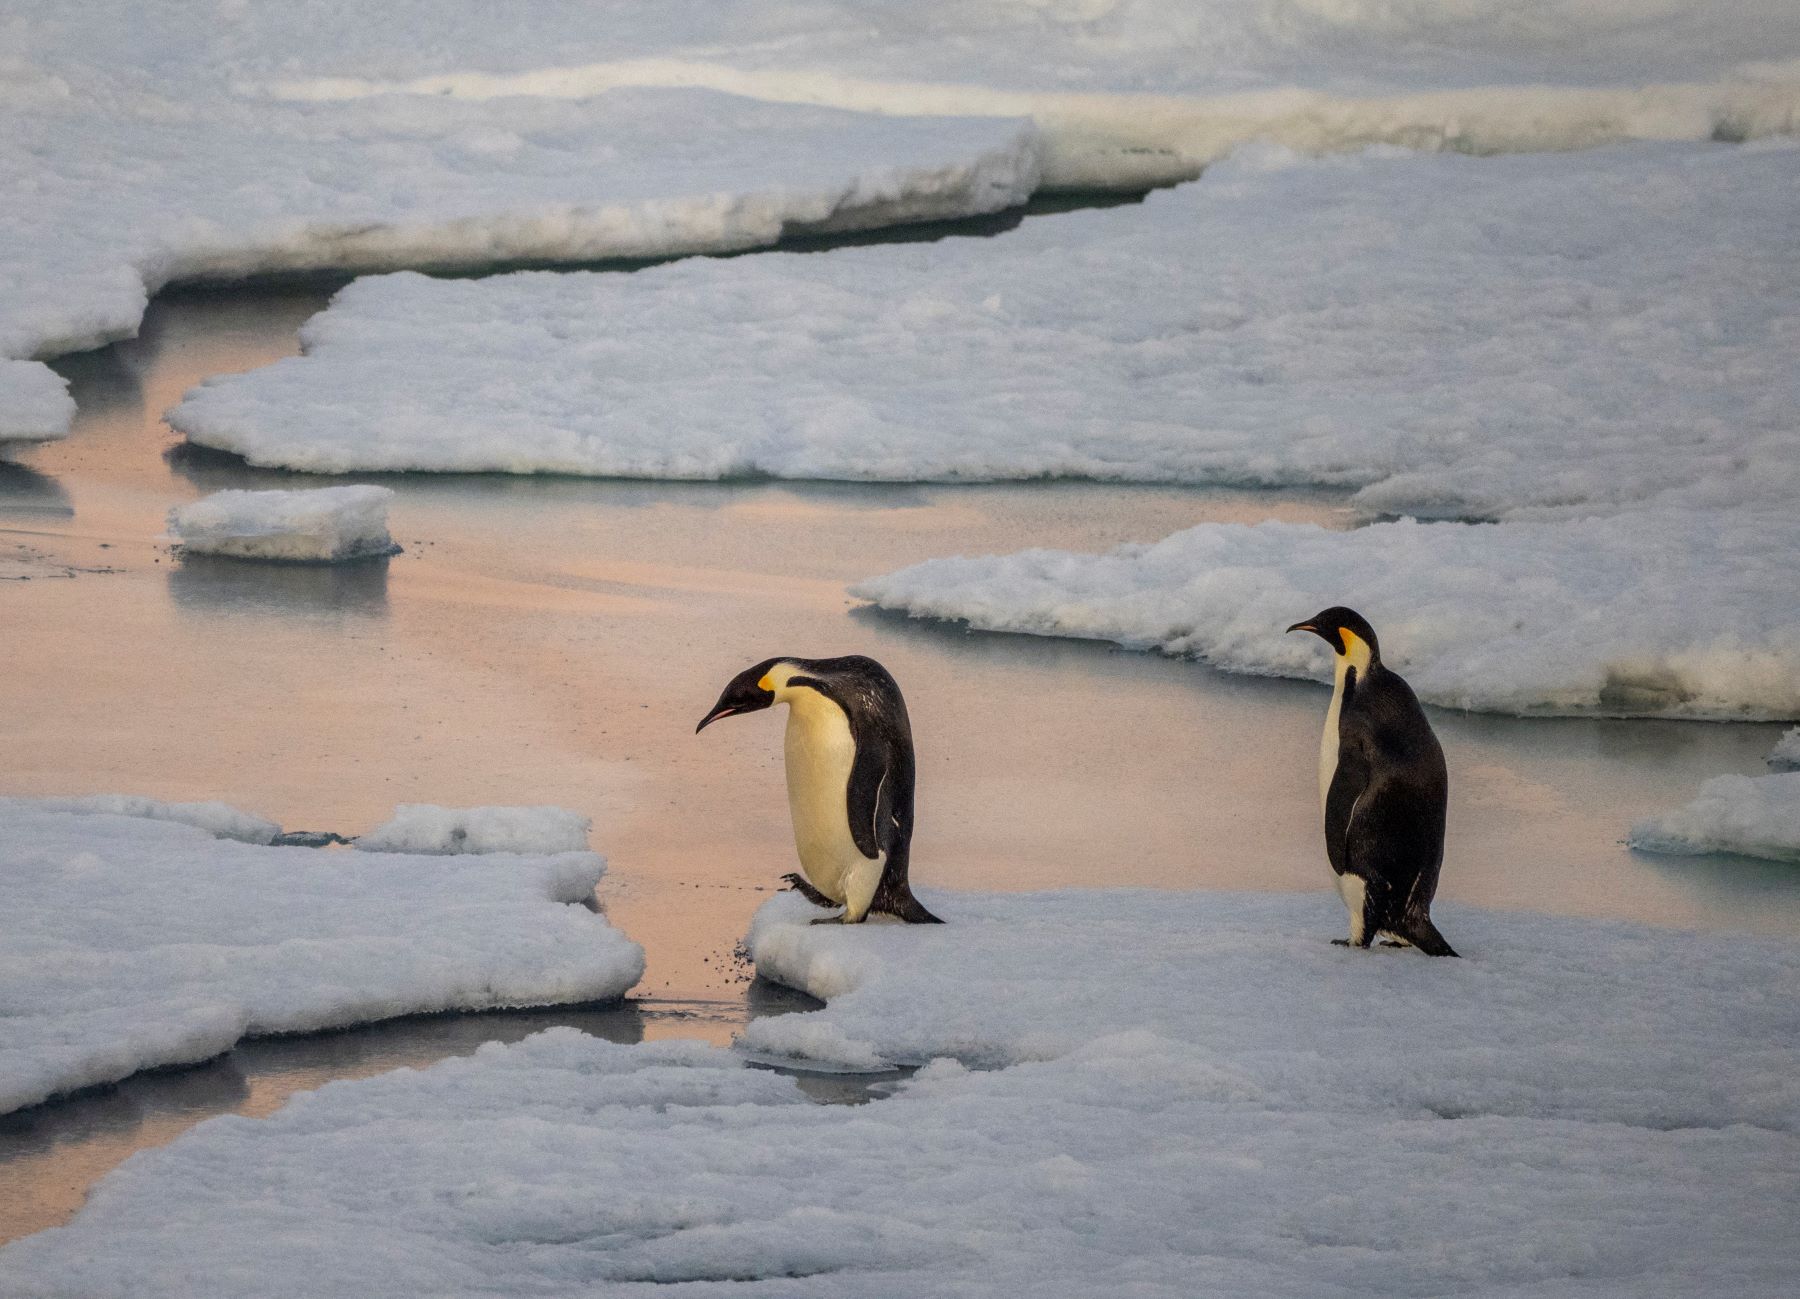 Casal de pinguins imperadores em ilha no Mar de Weddell, nq Antártica: degelo antecipado causaou10 mil mortes de filhotes no fim de 2022 (Foto: Michael Nolan / Robert Harding RF / AFP - 15/11/2021)